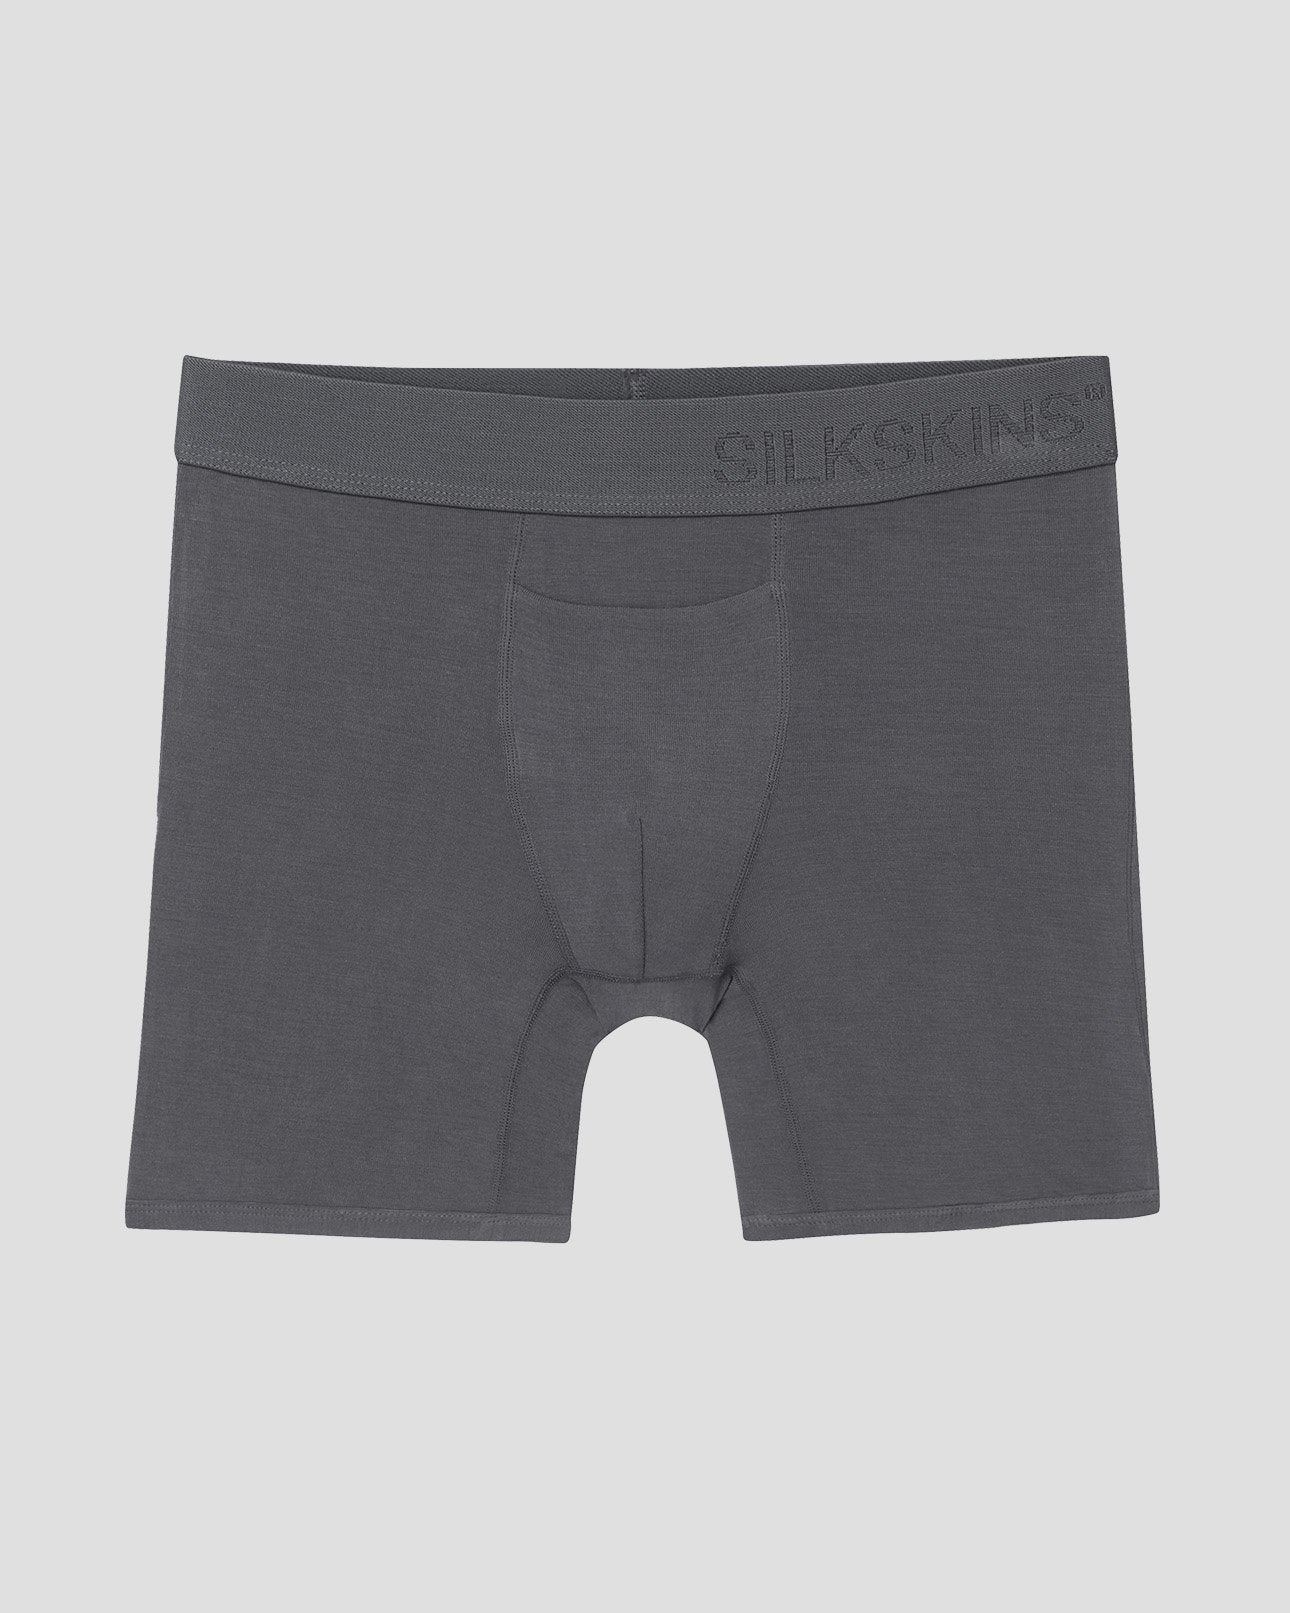 Underwear & Socks, Boxer Briefs For Men Pack Of 6